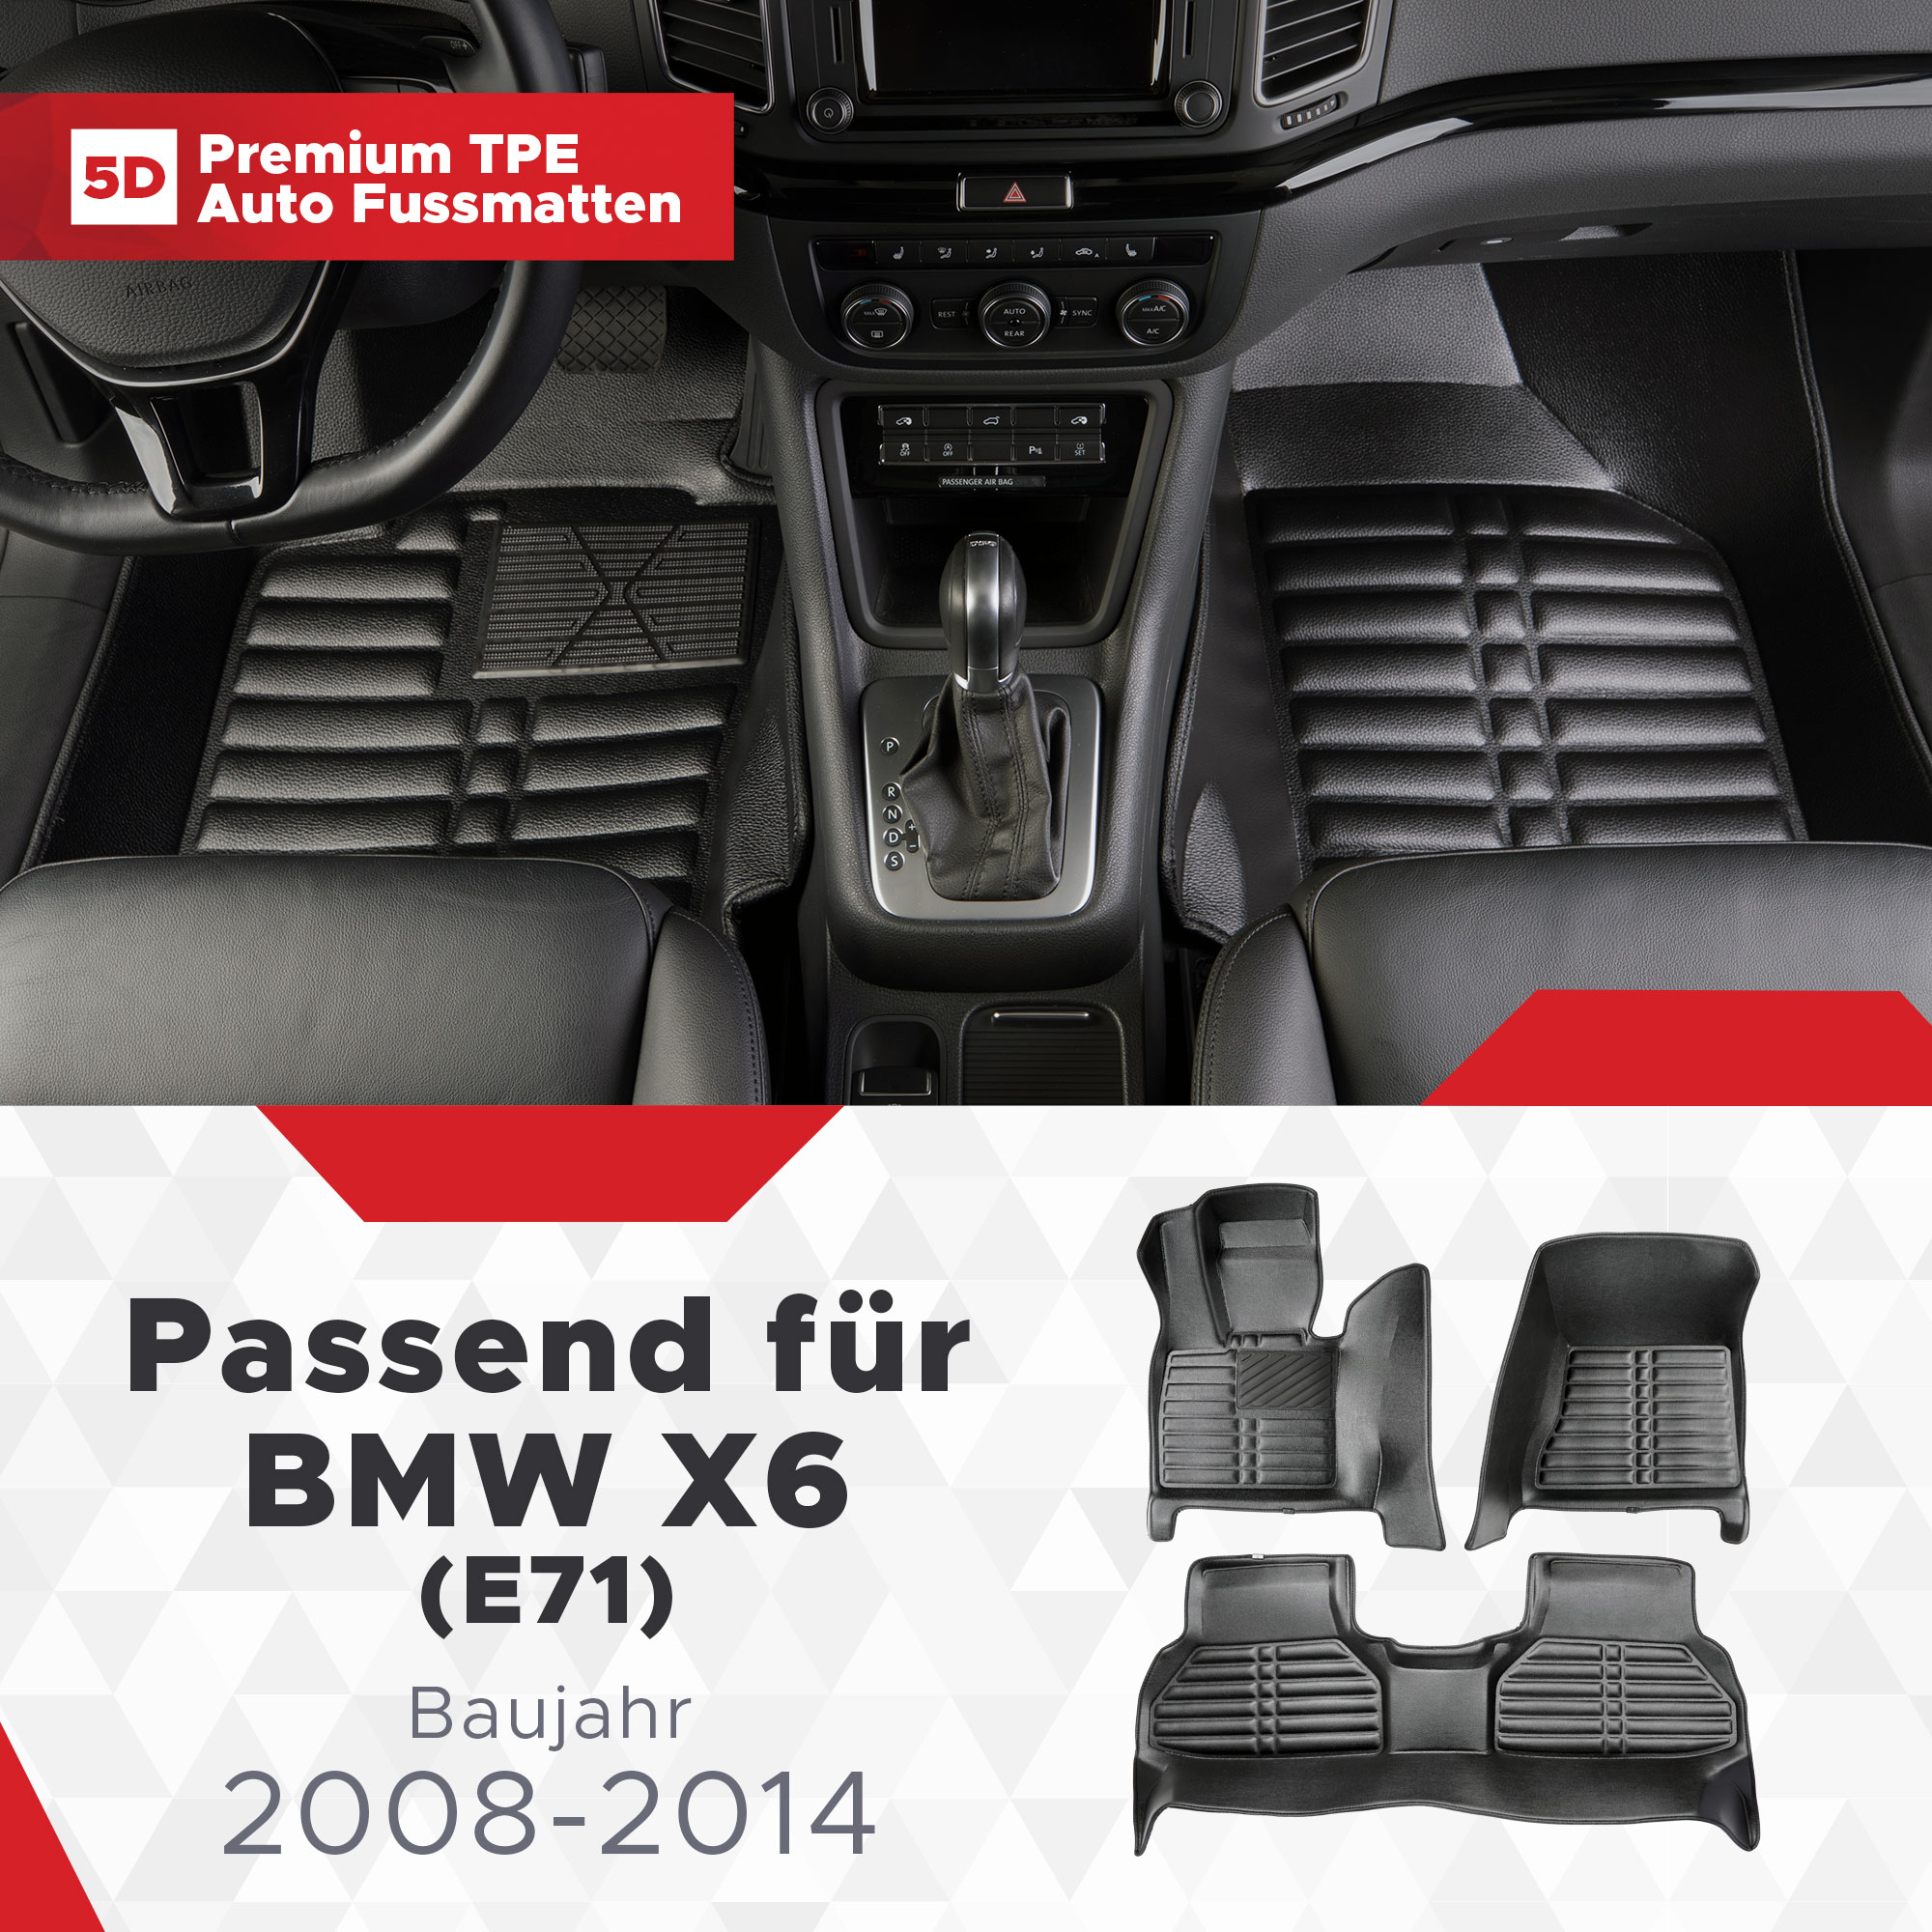 5D BMW X6 (E71) Fussmatten Bj 2008-2014 TPE